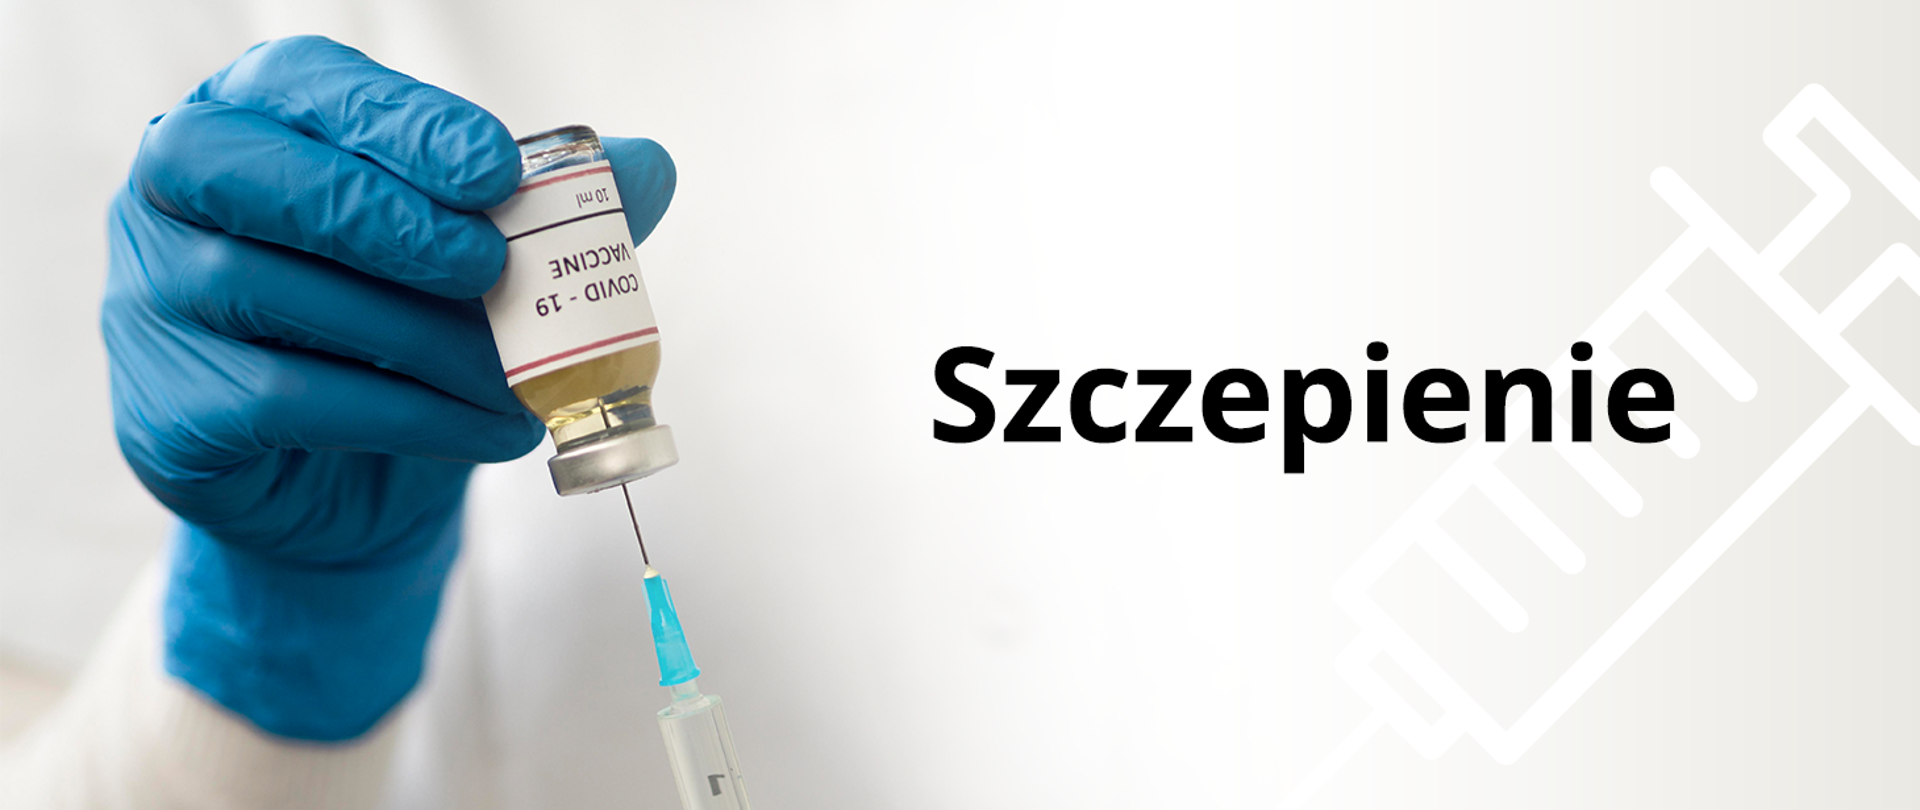 Zdjęcie przedstawia po lewej stronie dłoń w medycznej niebieskiej rękawiczce, która trzyma buteleczkę ze szczepionką i widoczną igłą ze strzykawką, po prawej stronie na beżowym tle z zarysem strzykawki napis Szczepienie.